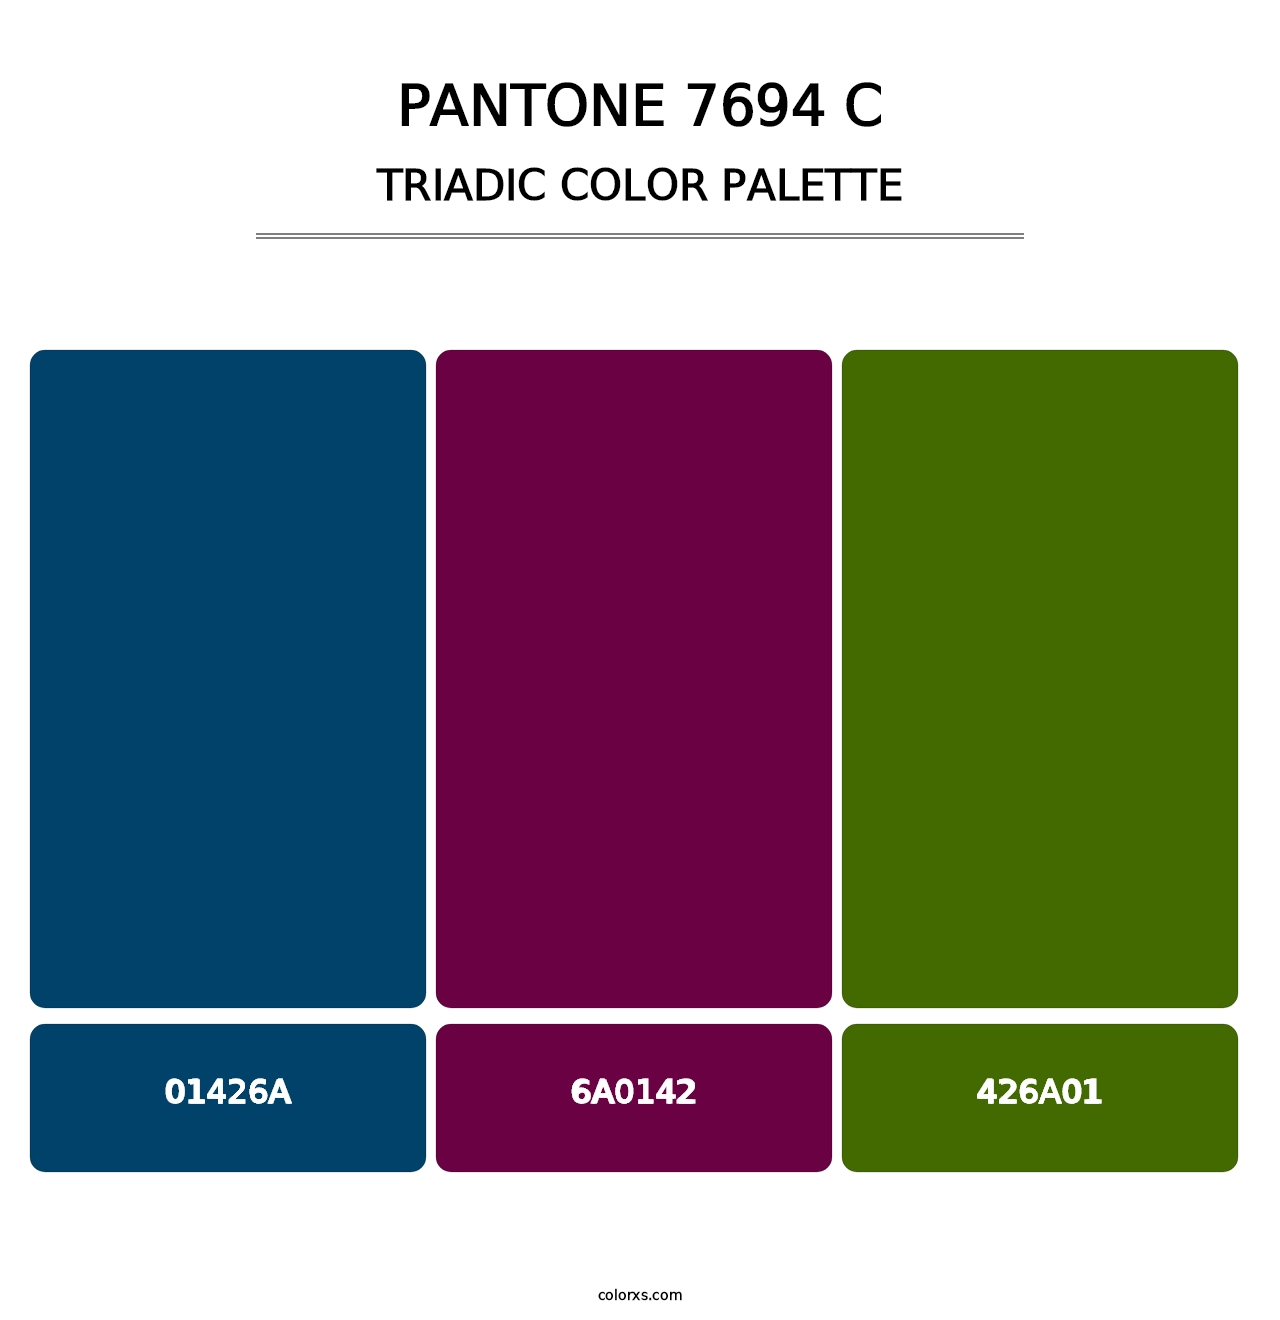 PANTONE 7694 C - Triadic Color Palette